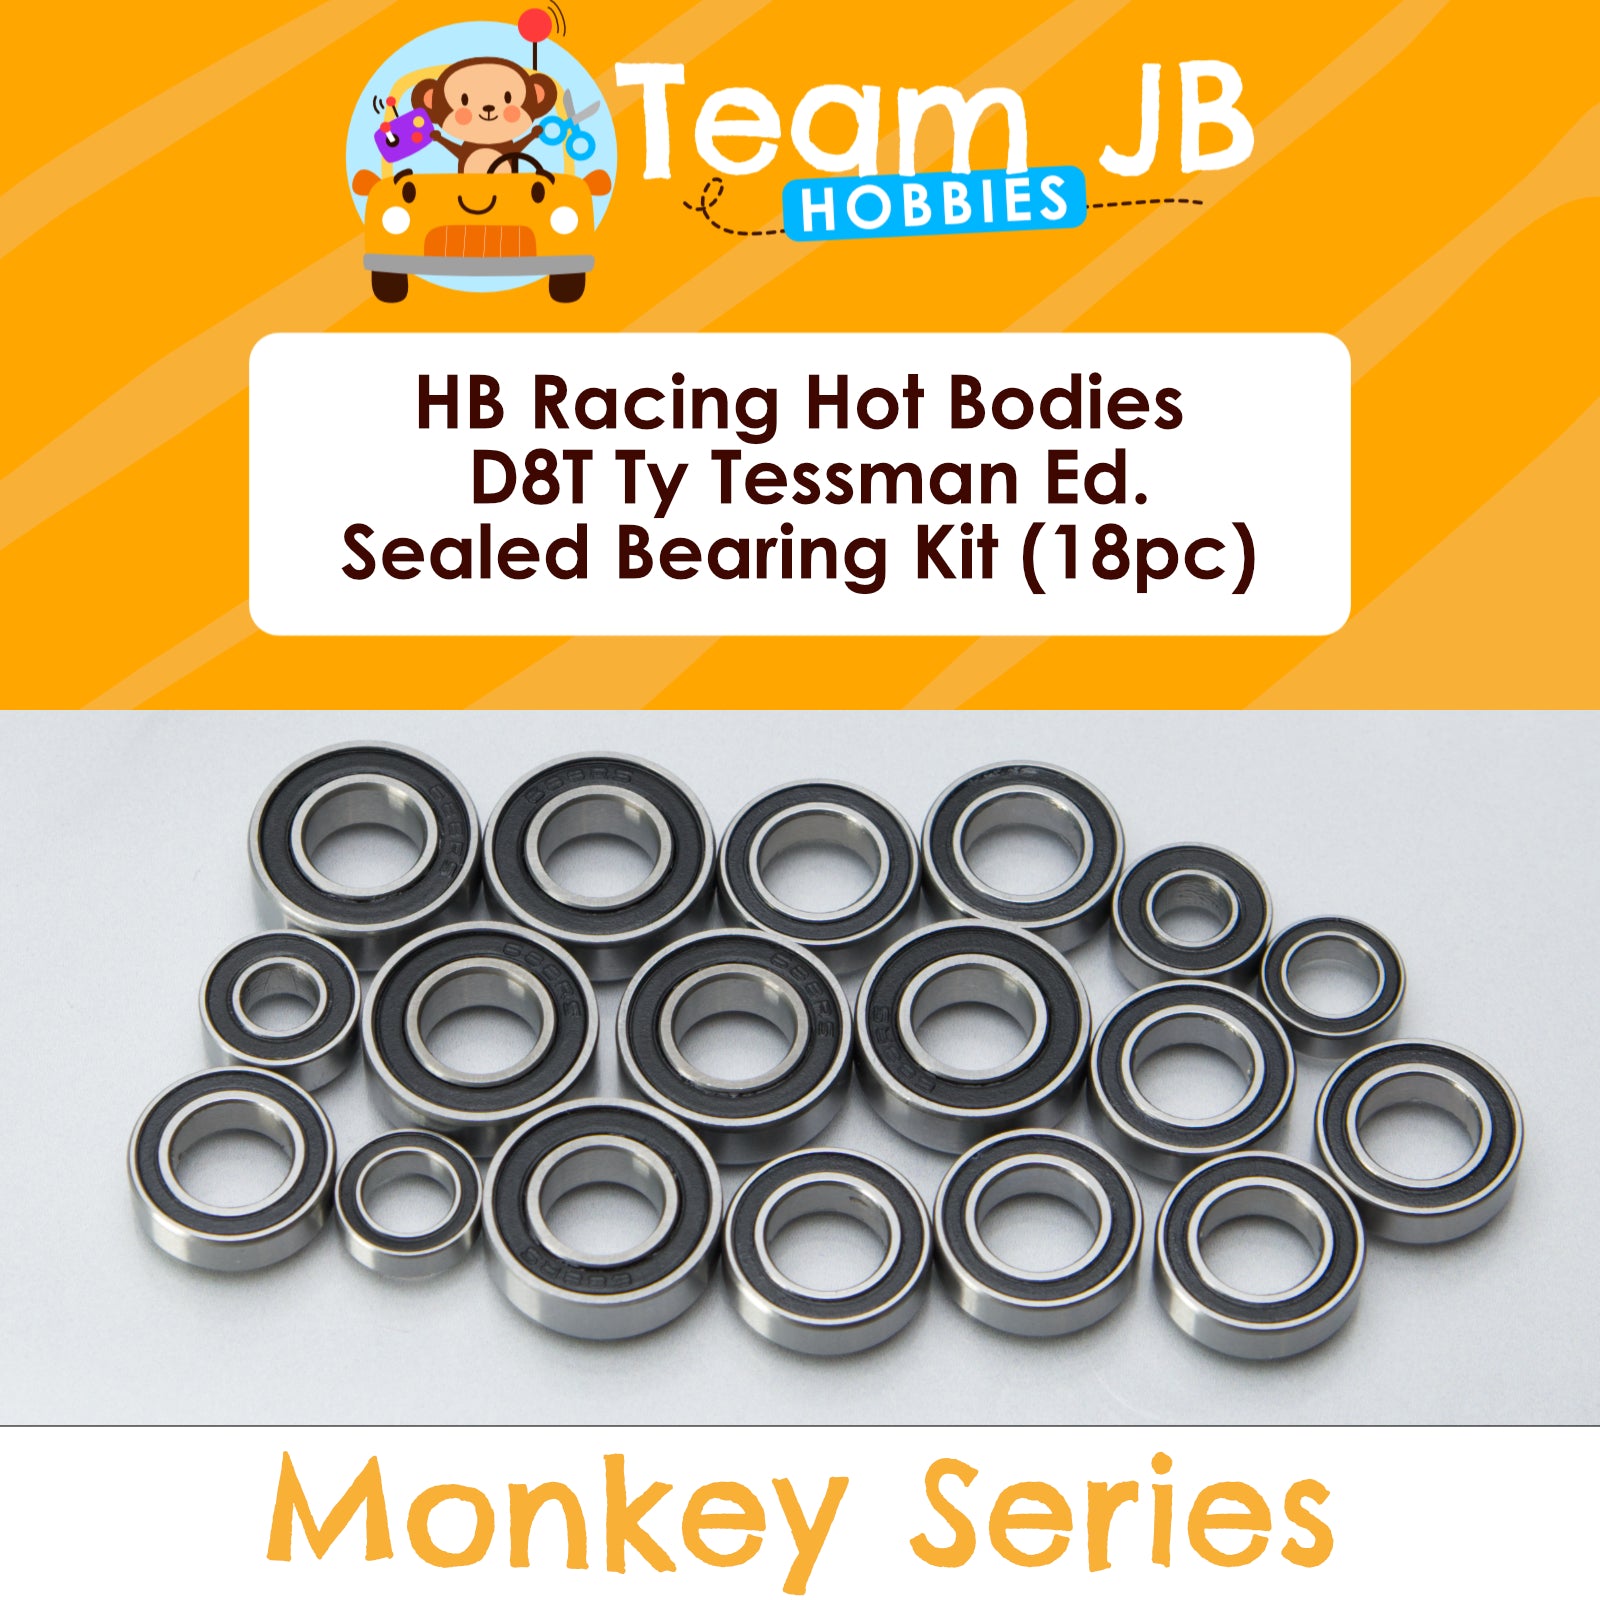 HB Racing Hot Bodies D8T Ty Tessman Ed. - Sealed Bearing Kit